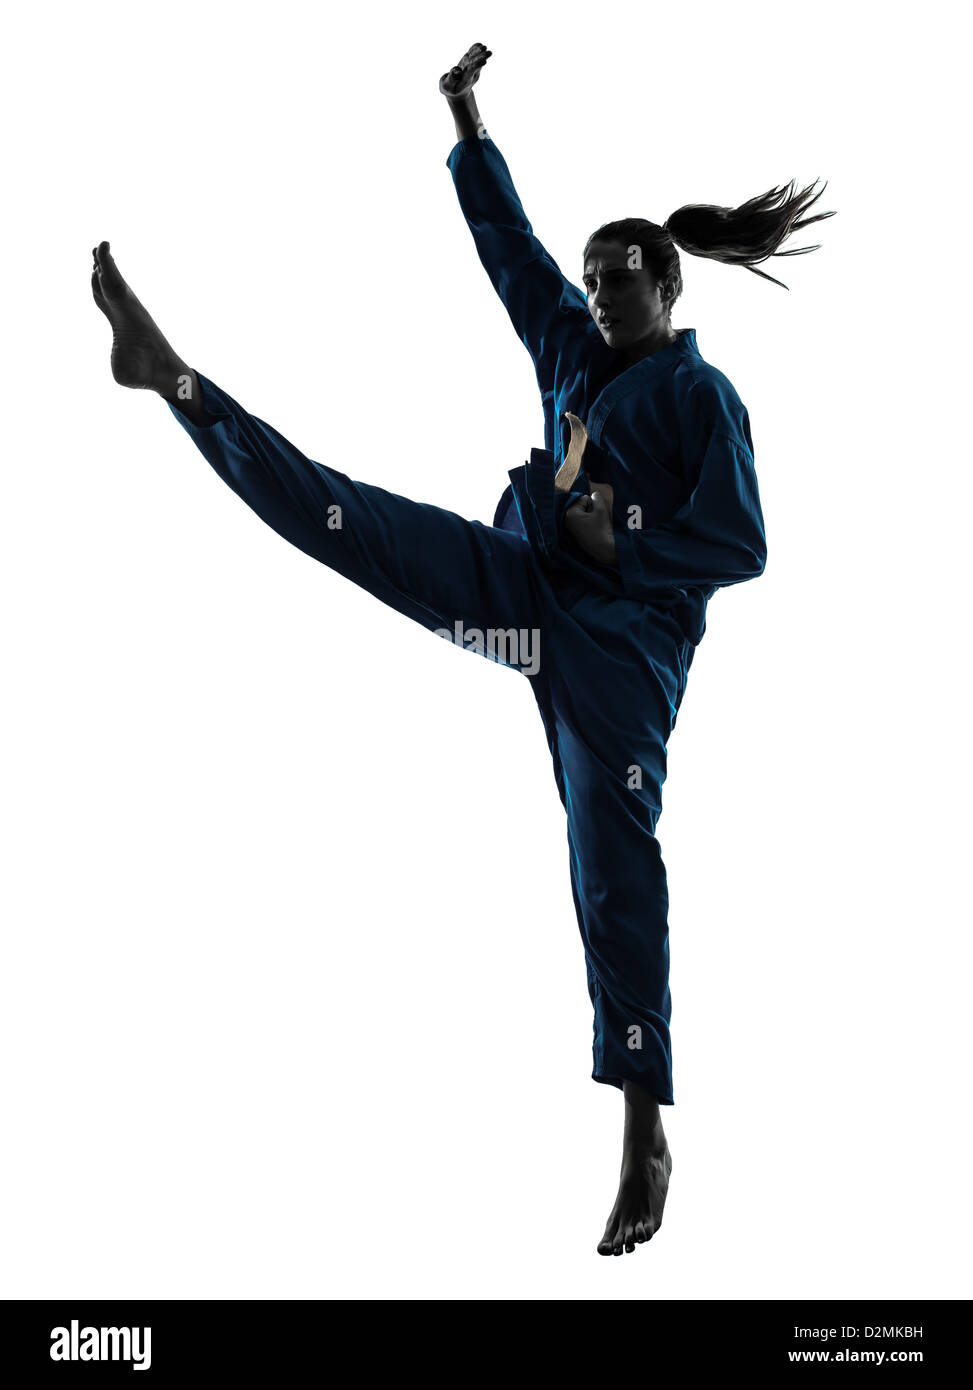 Una donna che esercitano vietvodao karate arti marziali in silhouette studio isolato su sfondo bianco Foto Stock